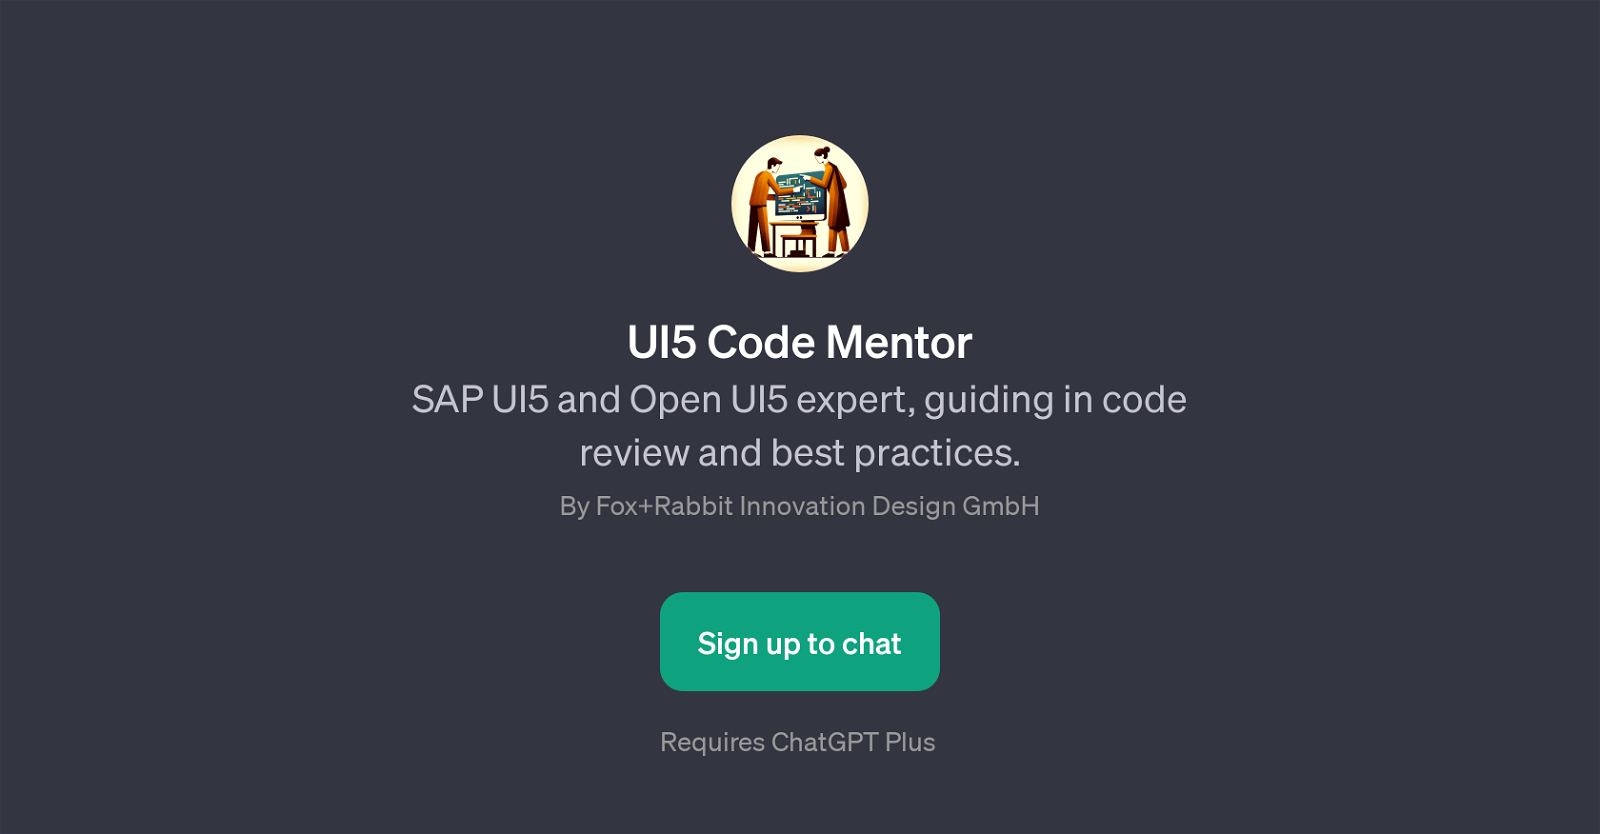 UI5 Code Mentor website